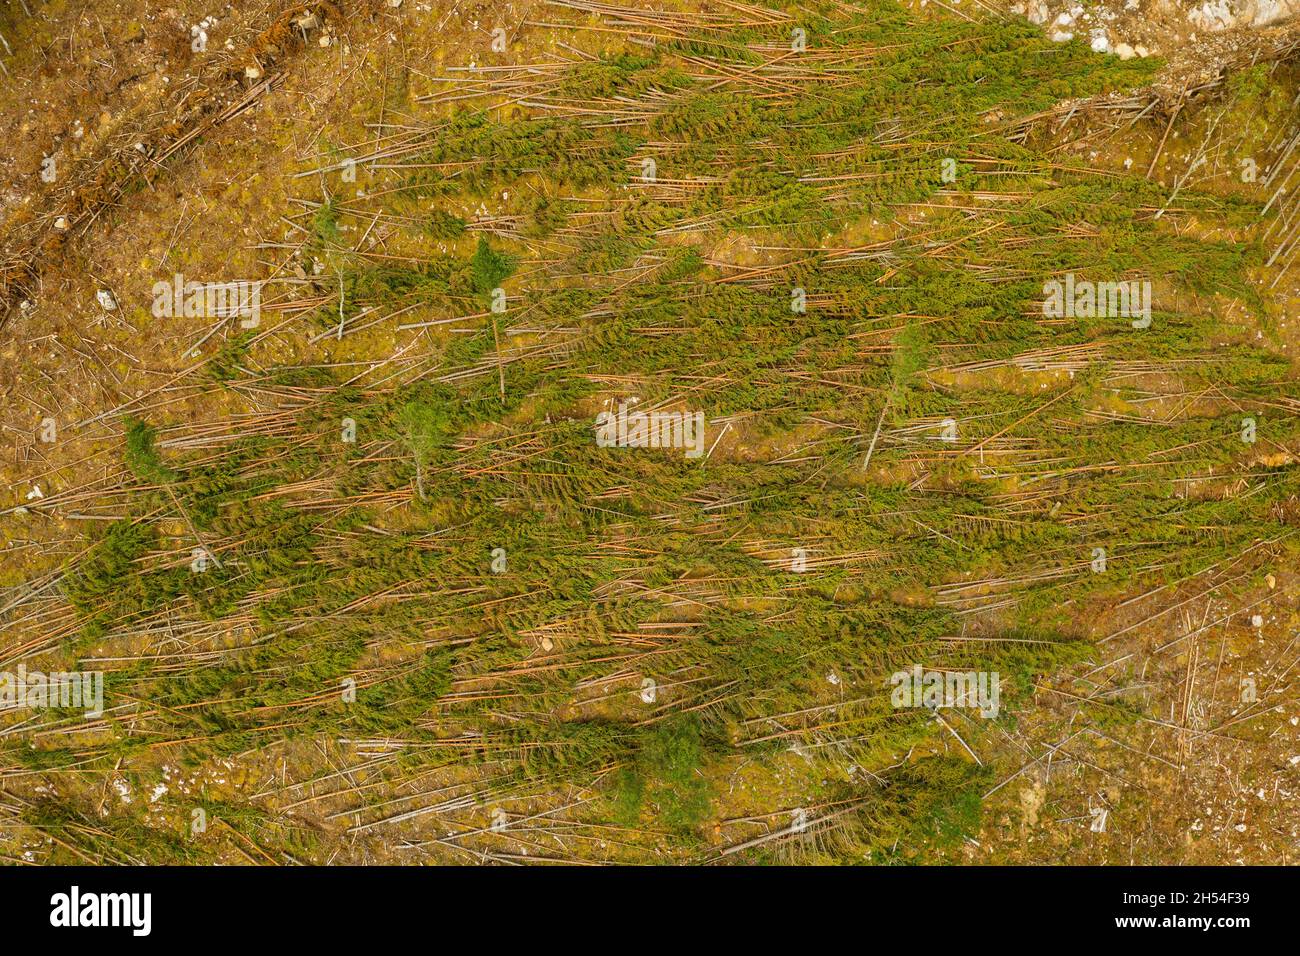 Vista aérea de la cosecha de madera en una ladera cerca de Cannich en las Tierras Altas de Escocia. Foto de stock